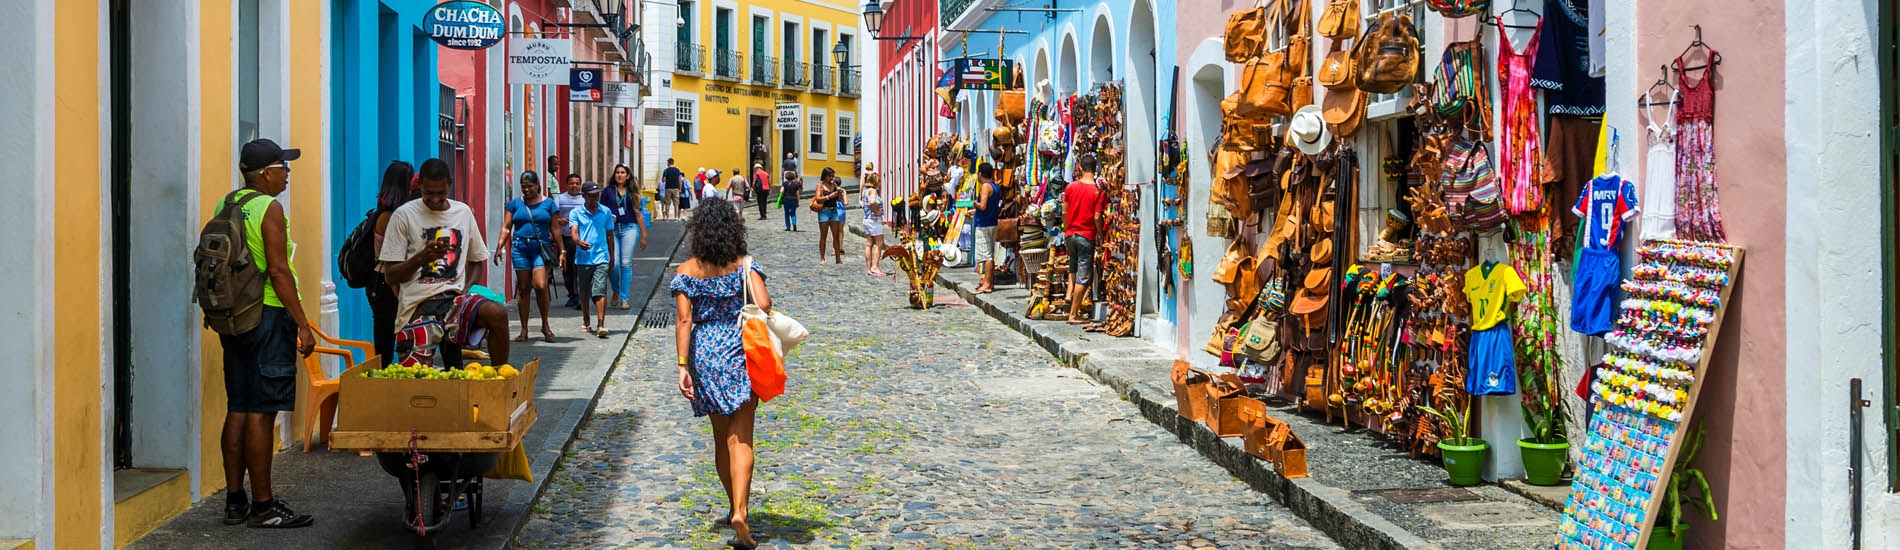 A historic center street of Salvador Bahia